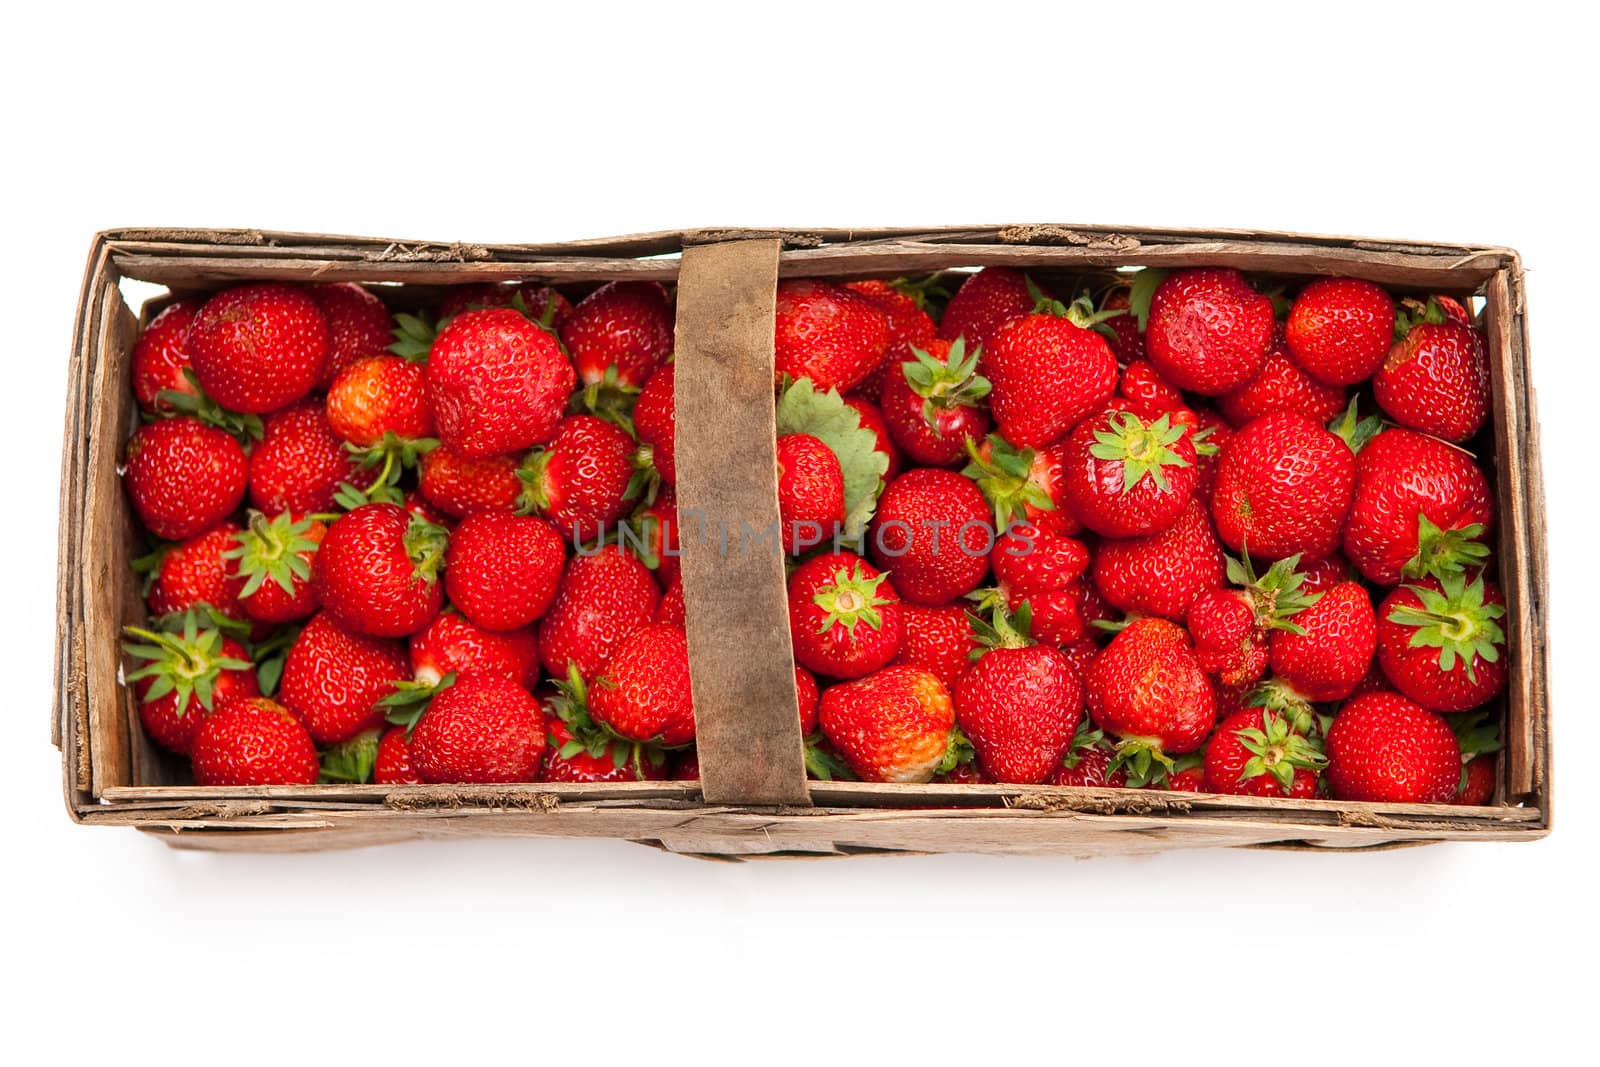 Strawberries by Yaurinko